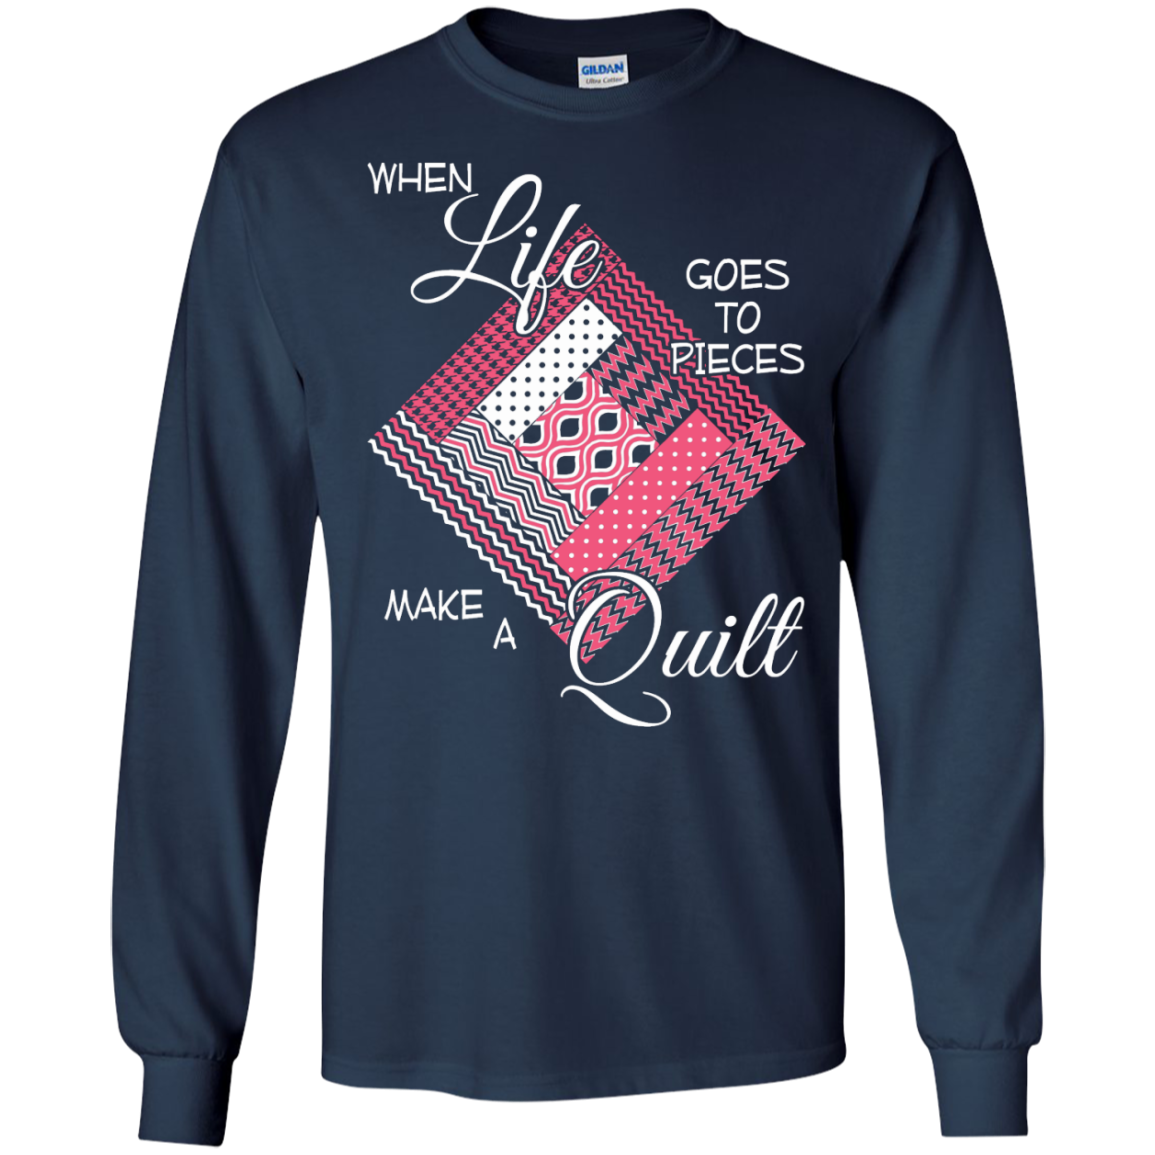 Make a Quilt (pink) Long Sleeve Ultra Cotton T-Shirt - Crafter4Life - 6